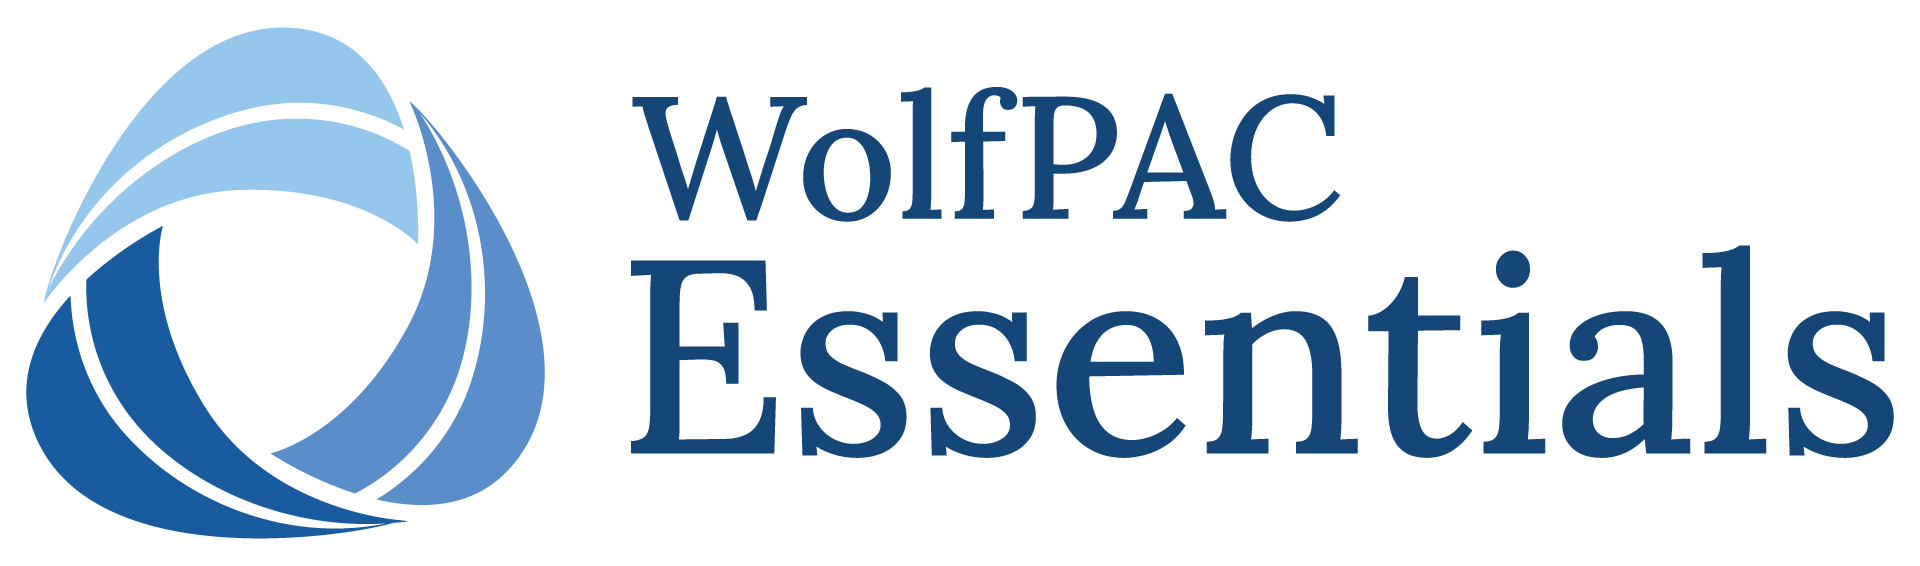 WolfPAC Essentials logo